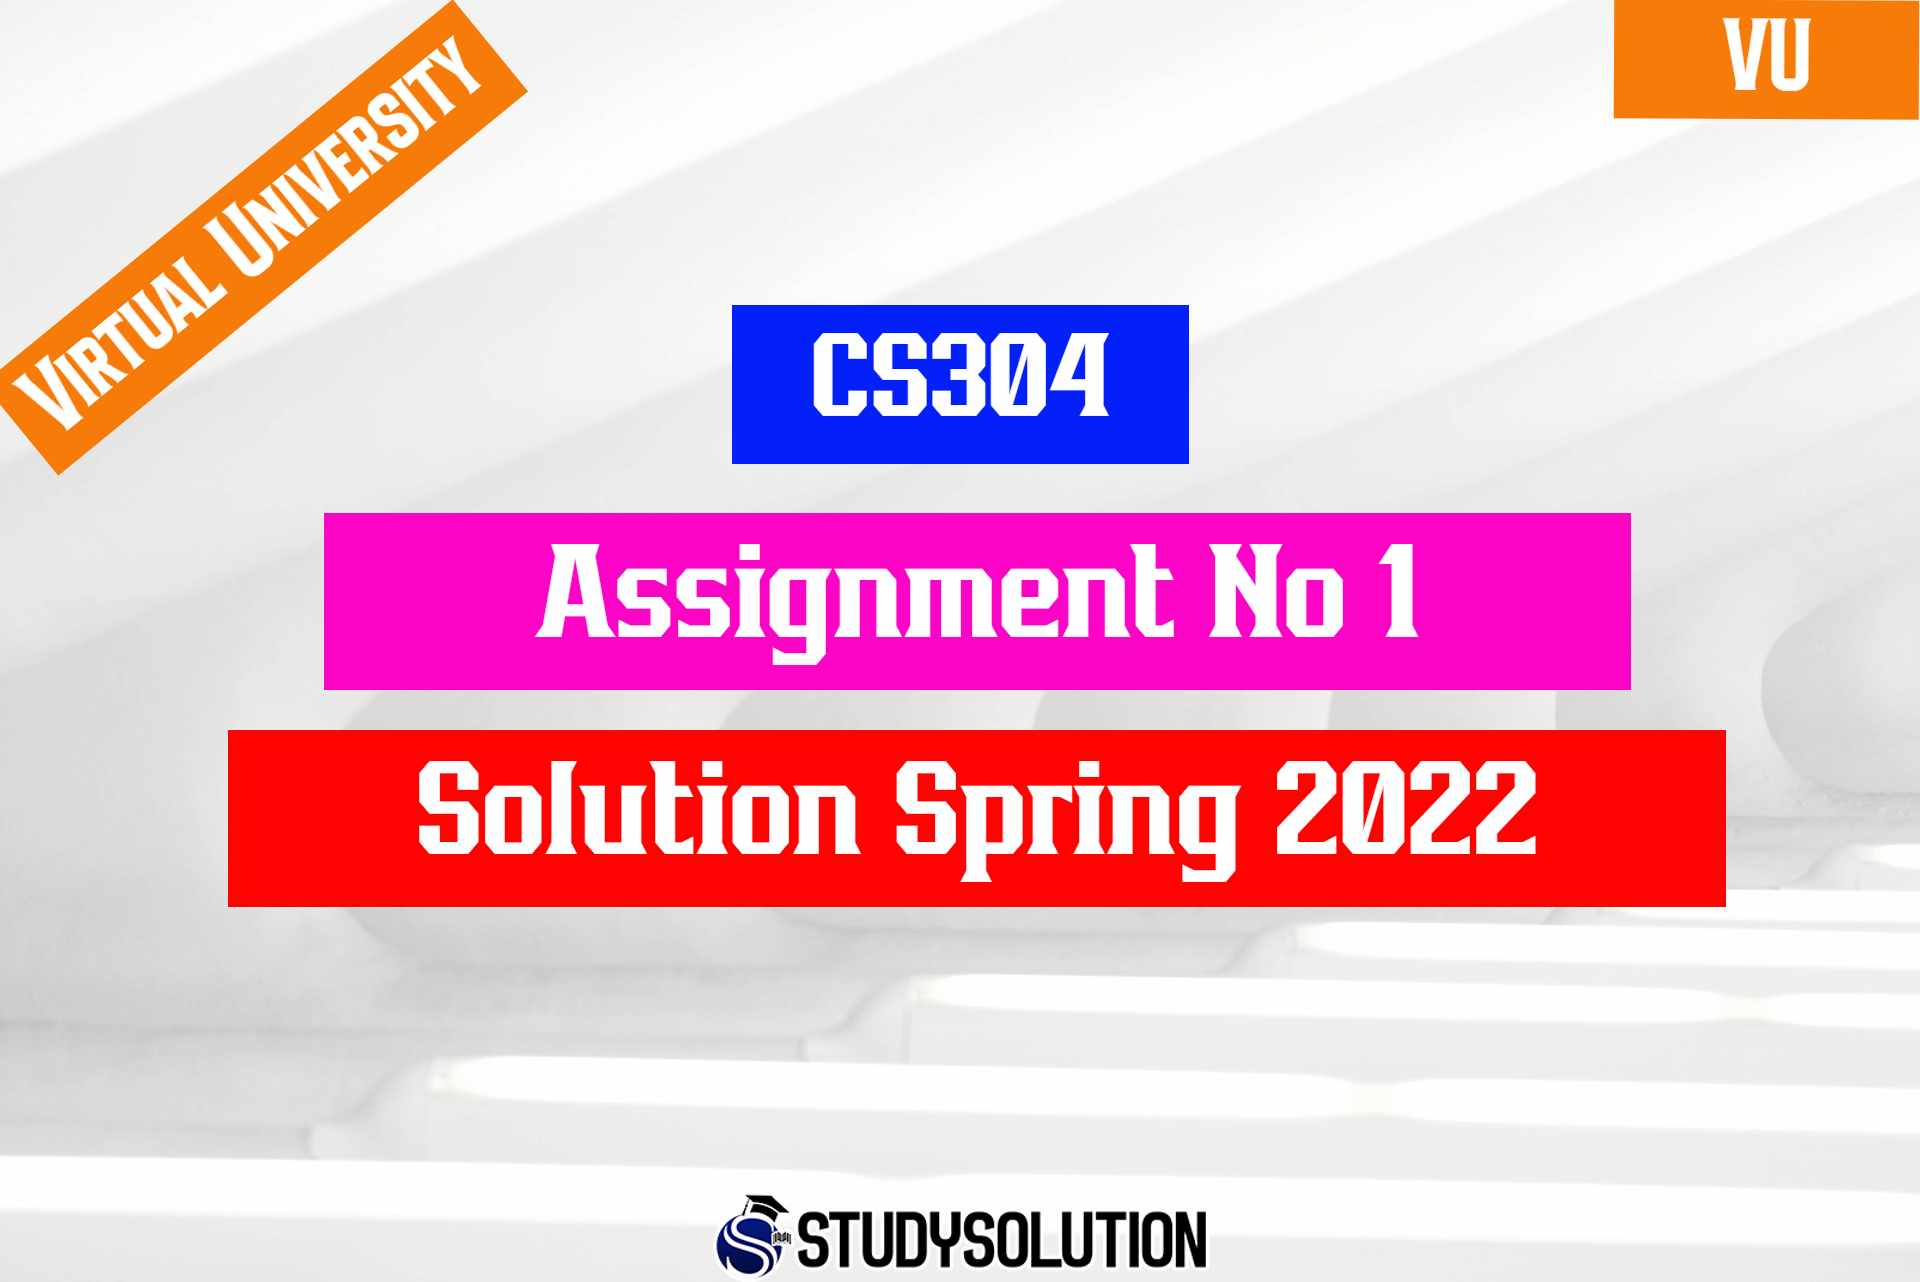 CS304 Assignment No 1 Solution Spring 2022